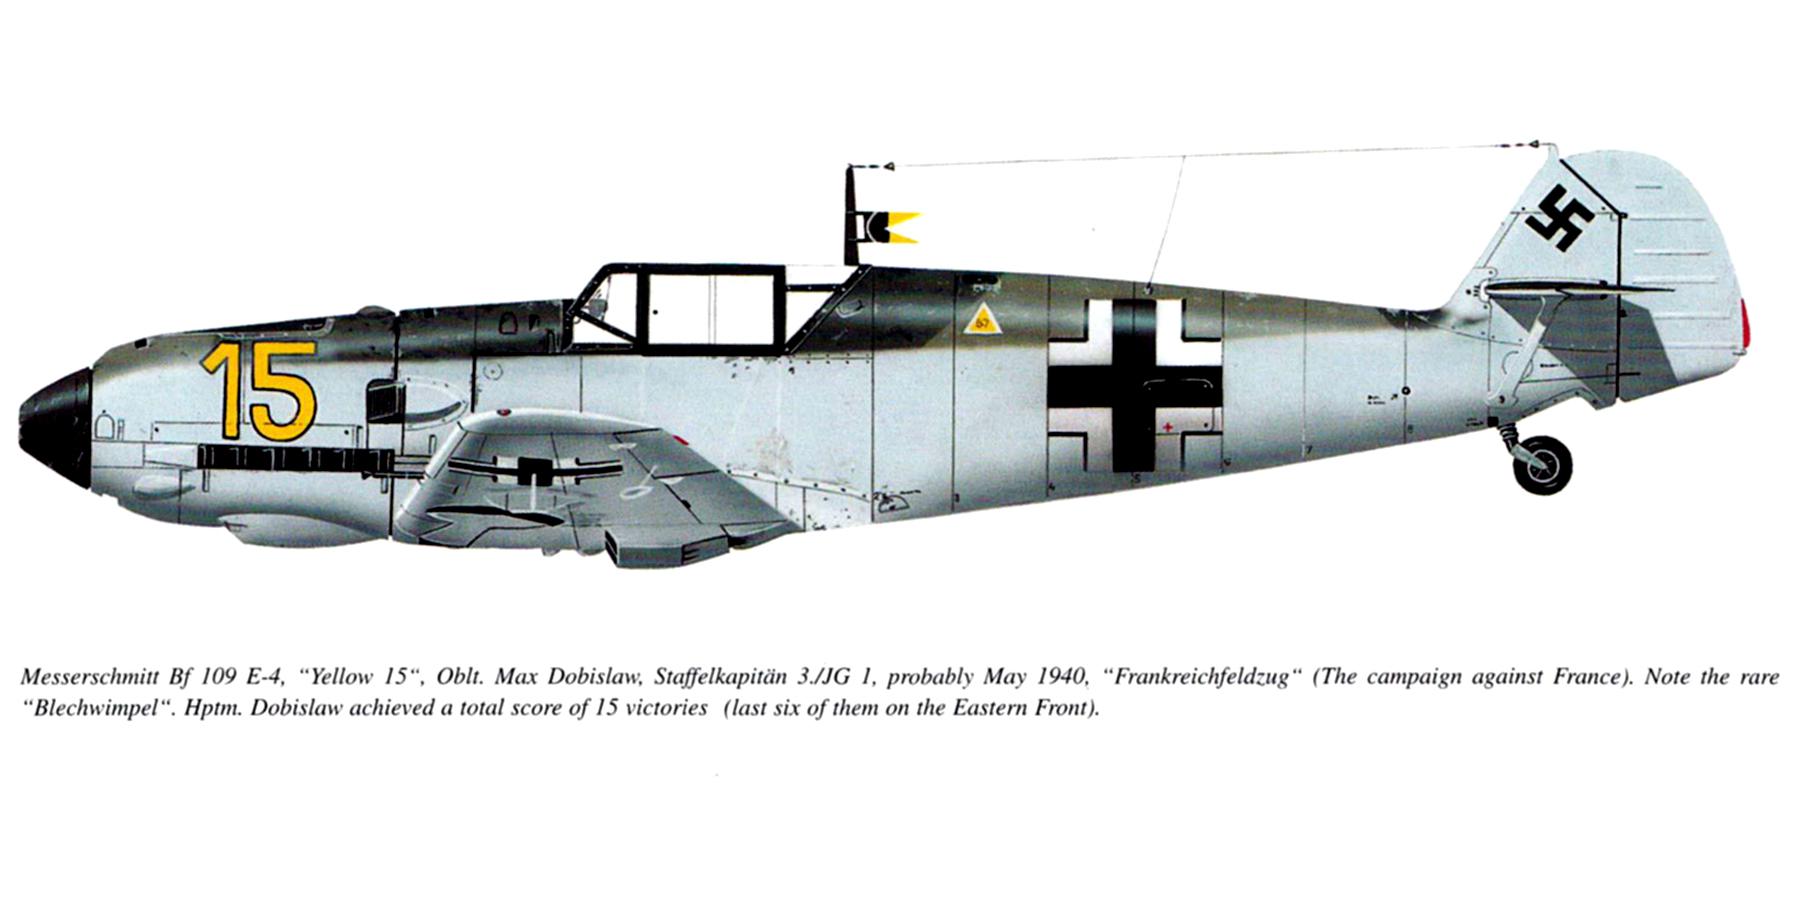 Messerschmitt Bf 109E4 3.JG1 Yellow 15 Stafellkaptain Max Dobislaw Battle of France May 1940 0A